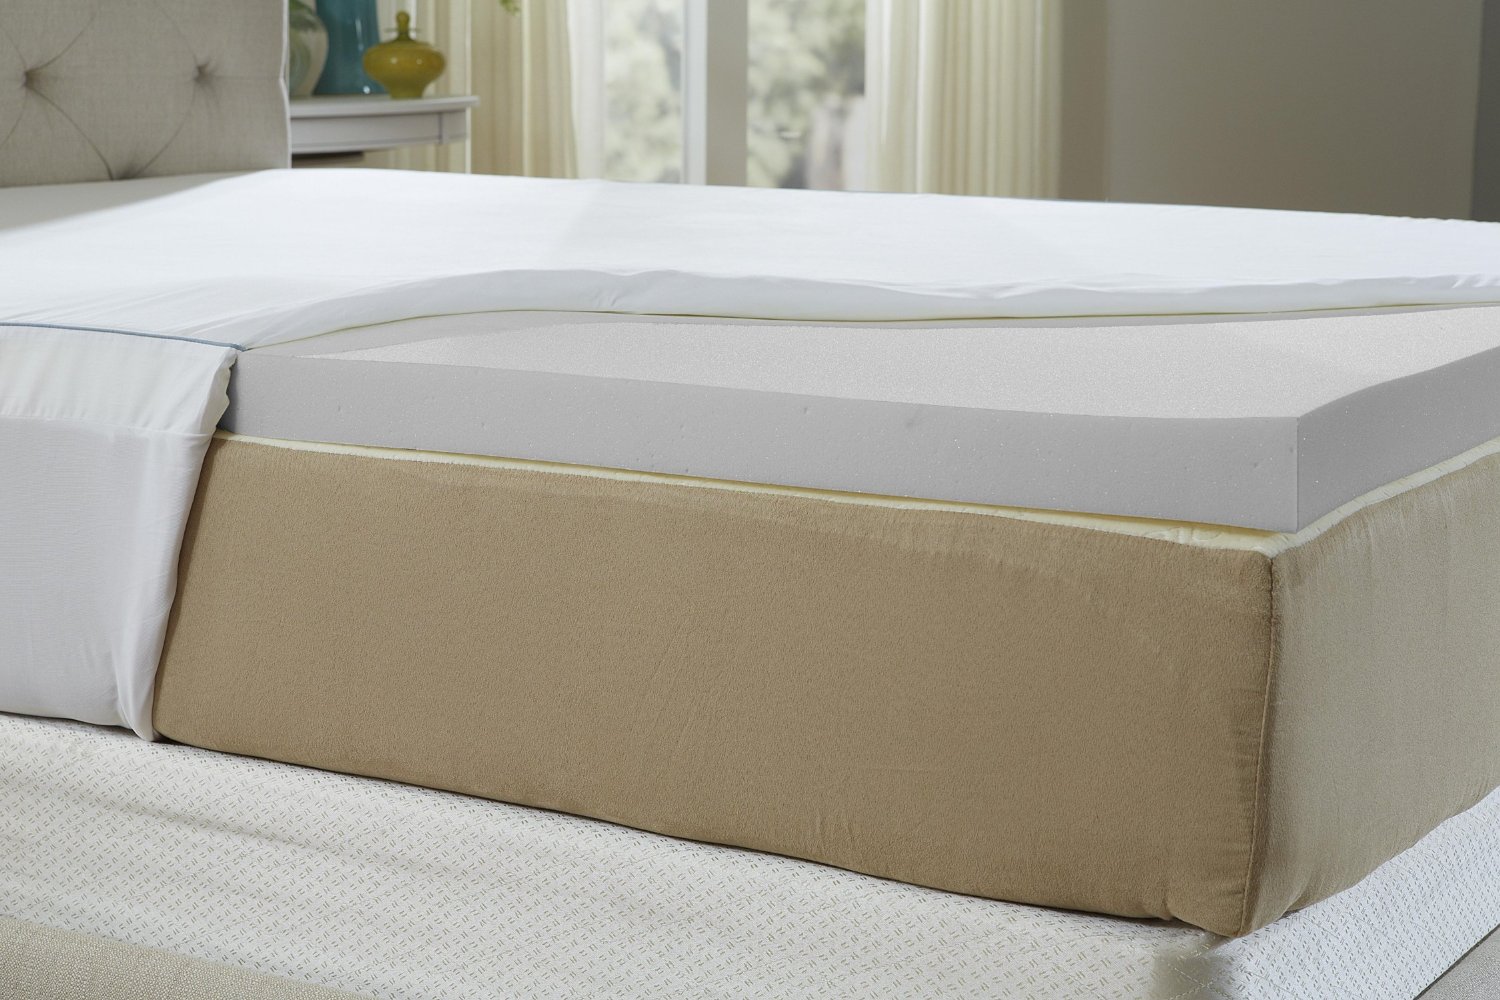 nature's sleep cool iq 10 mattress review